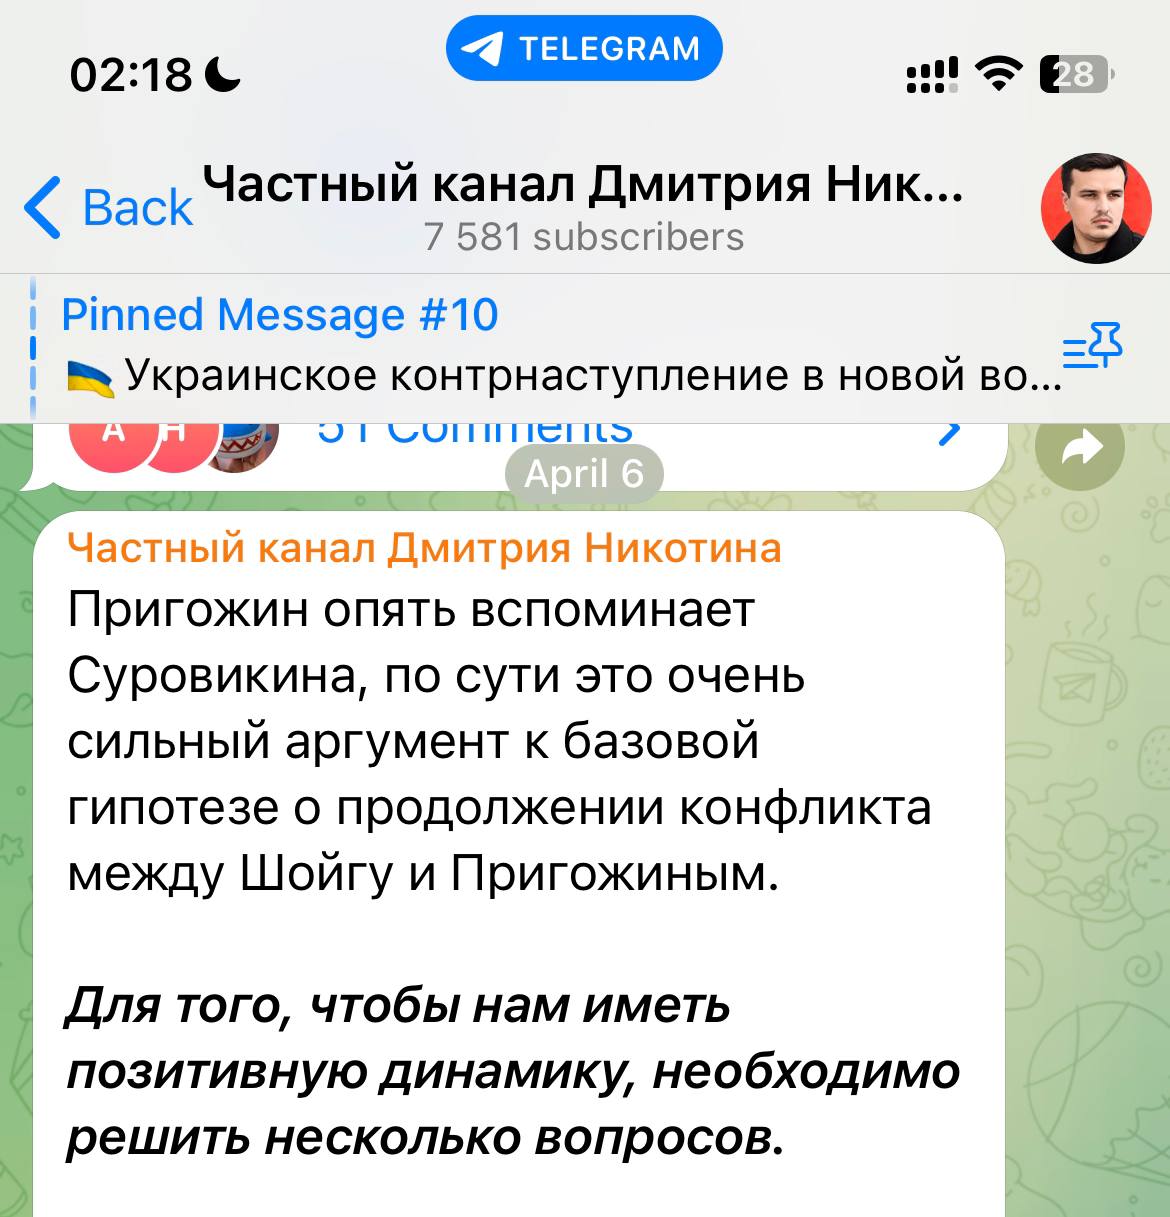 Дмитрий никотин телеграмм последнее видео смотреть бесплатно без регистрации в хорошем качестве фото 53